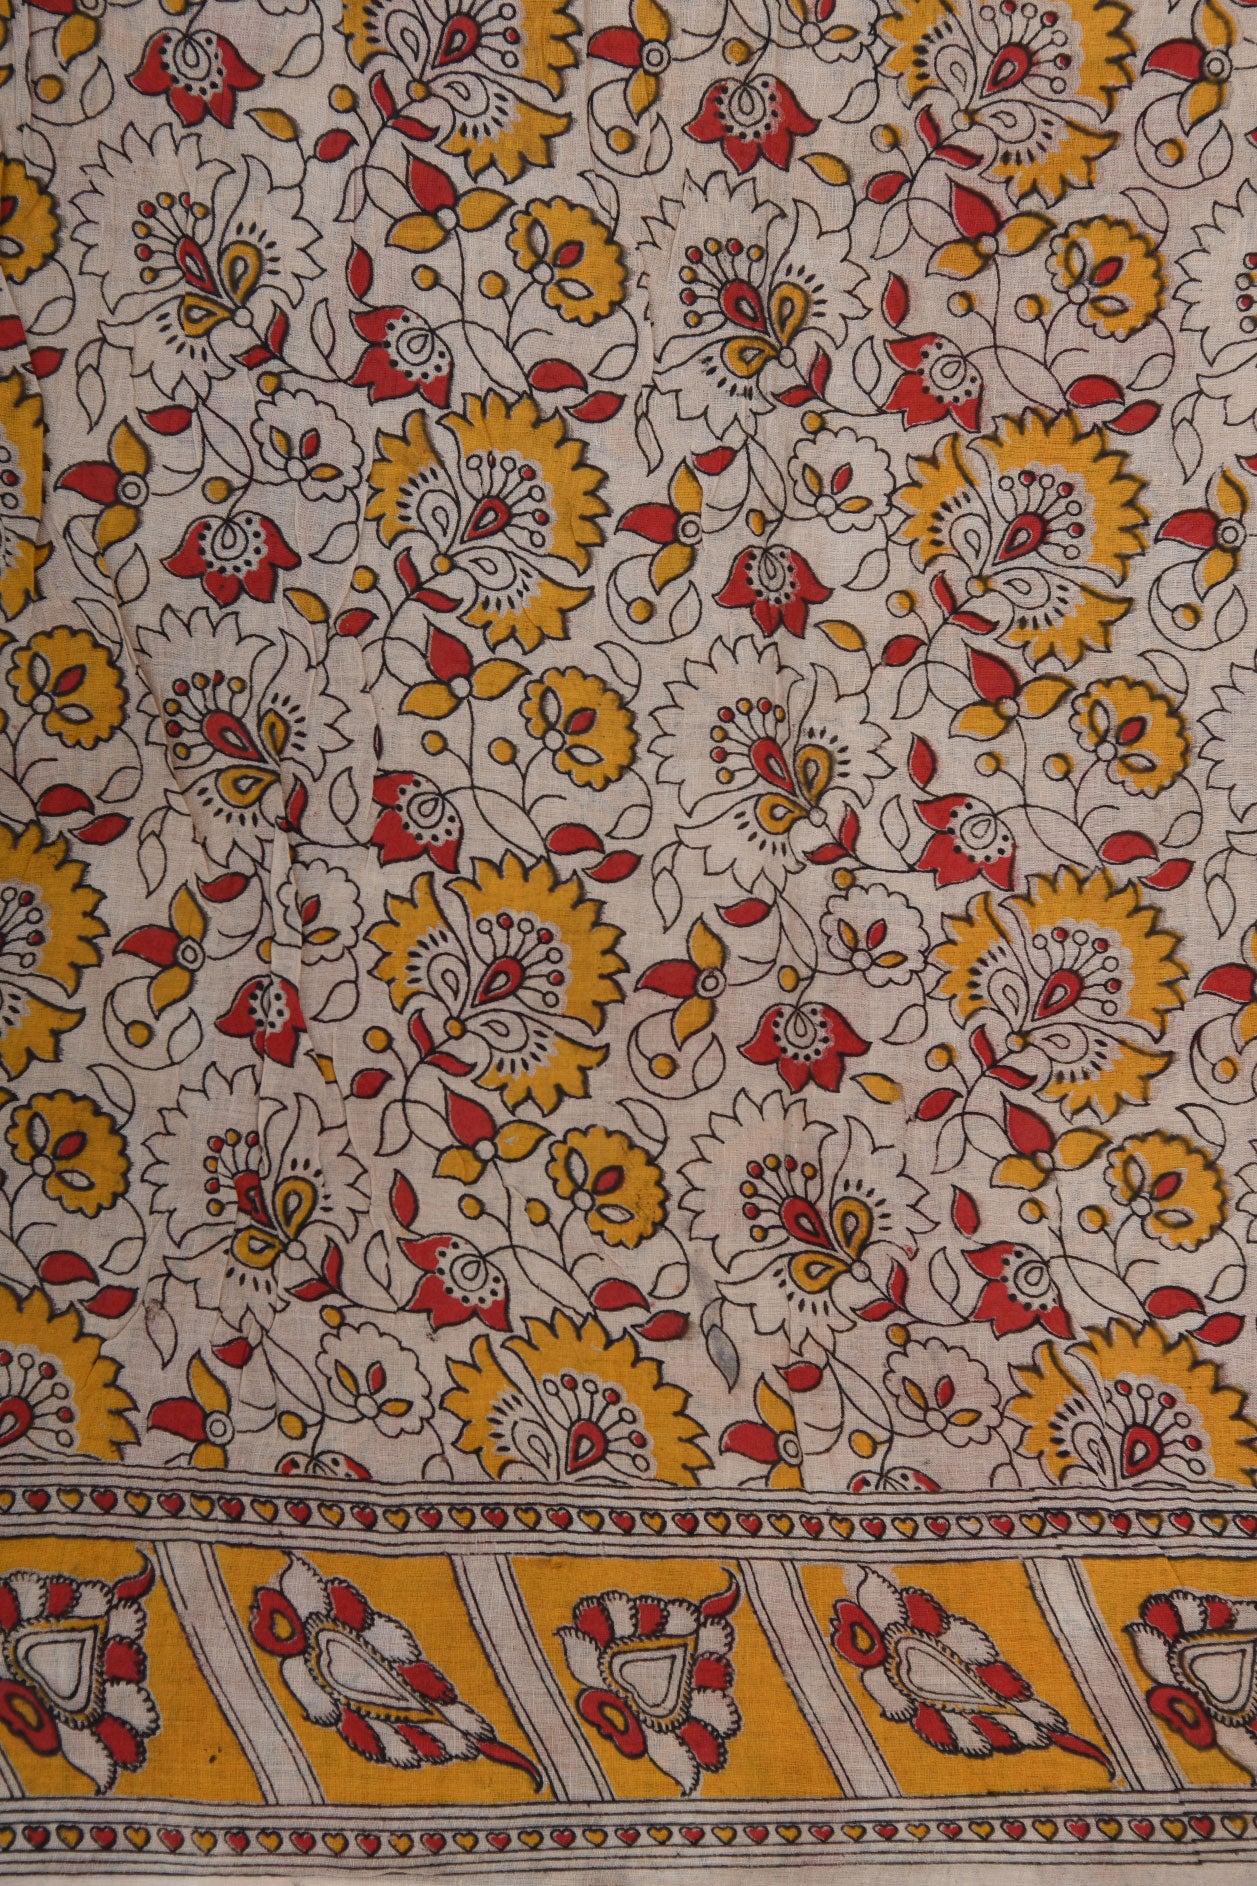 Floral Design Kalamkari Printed Cotton Lapis Blue Cotton Saree